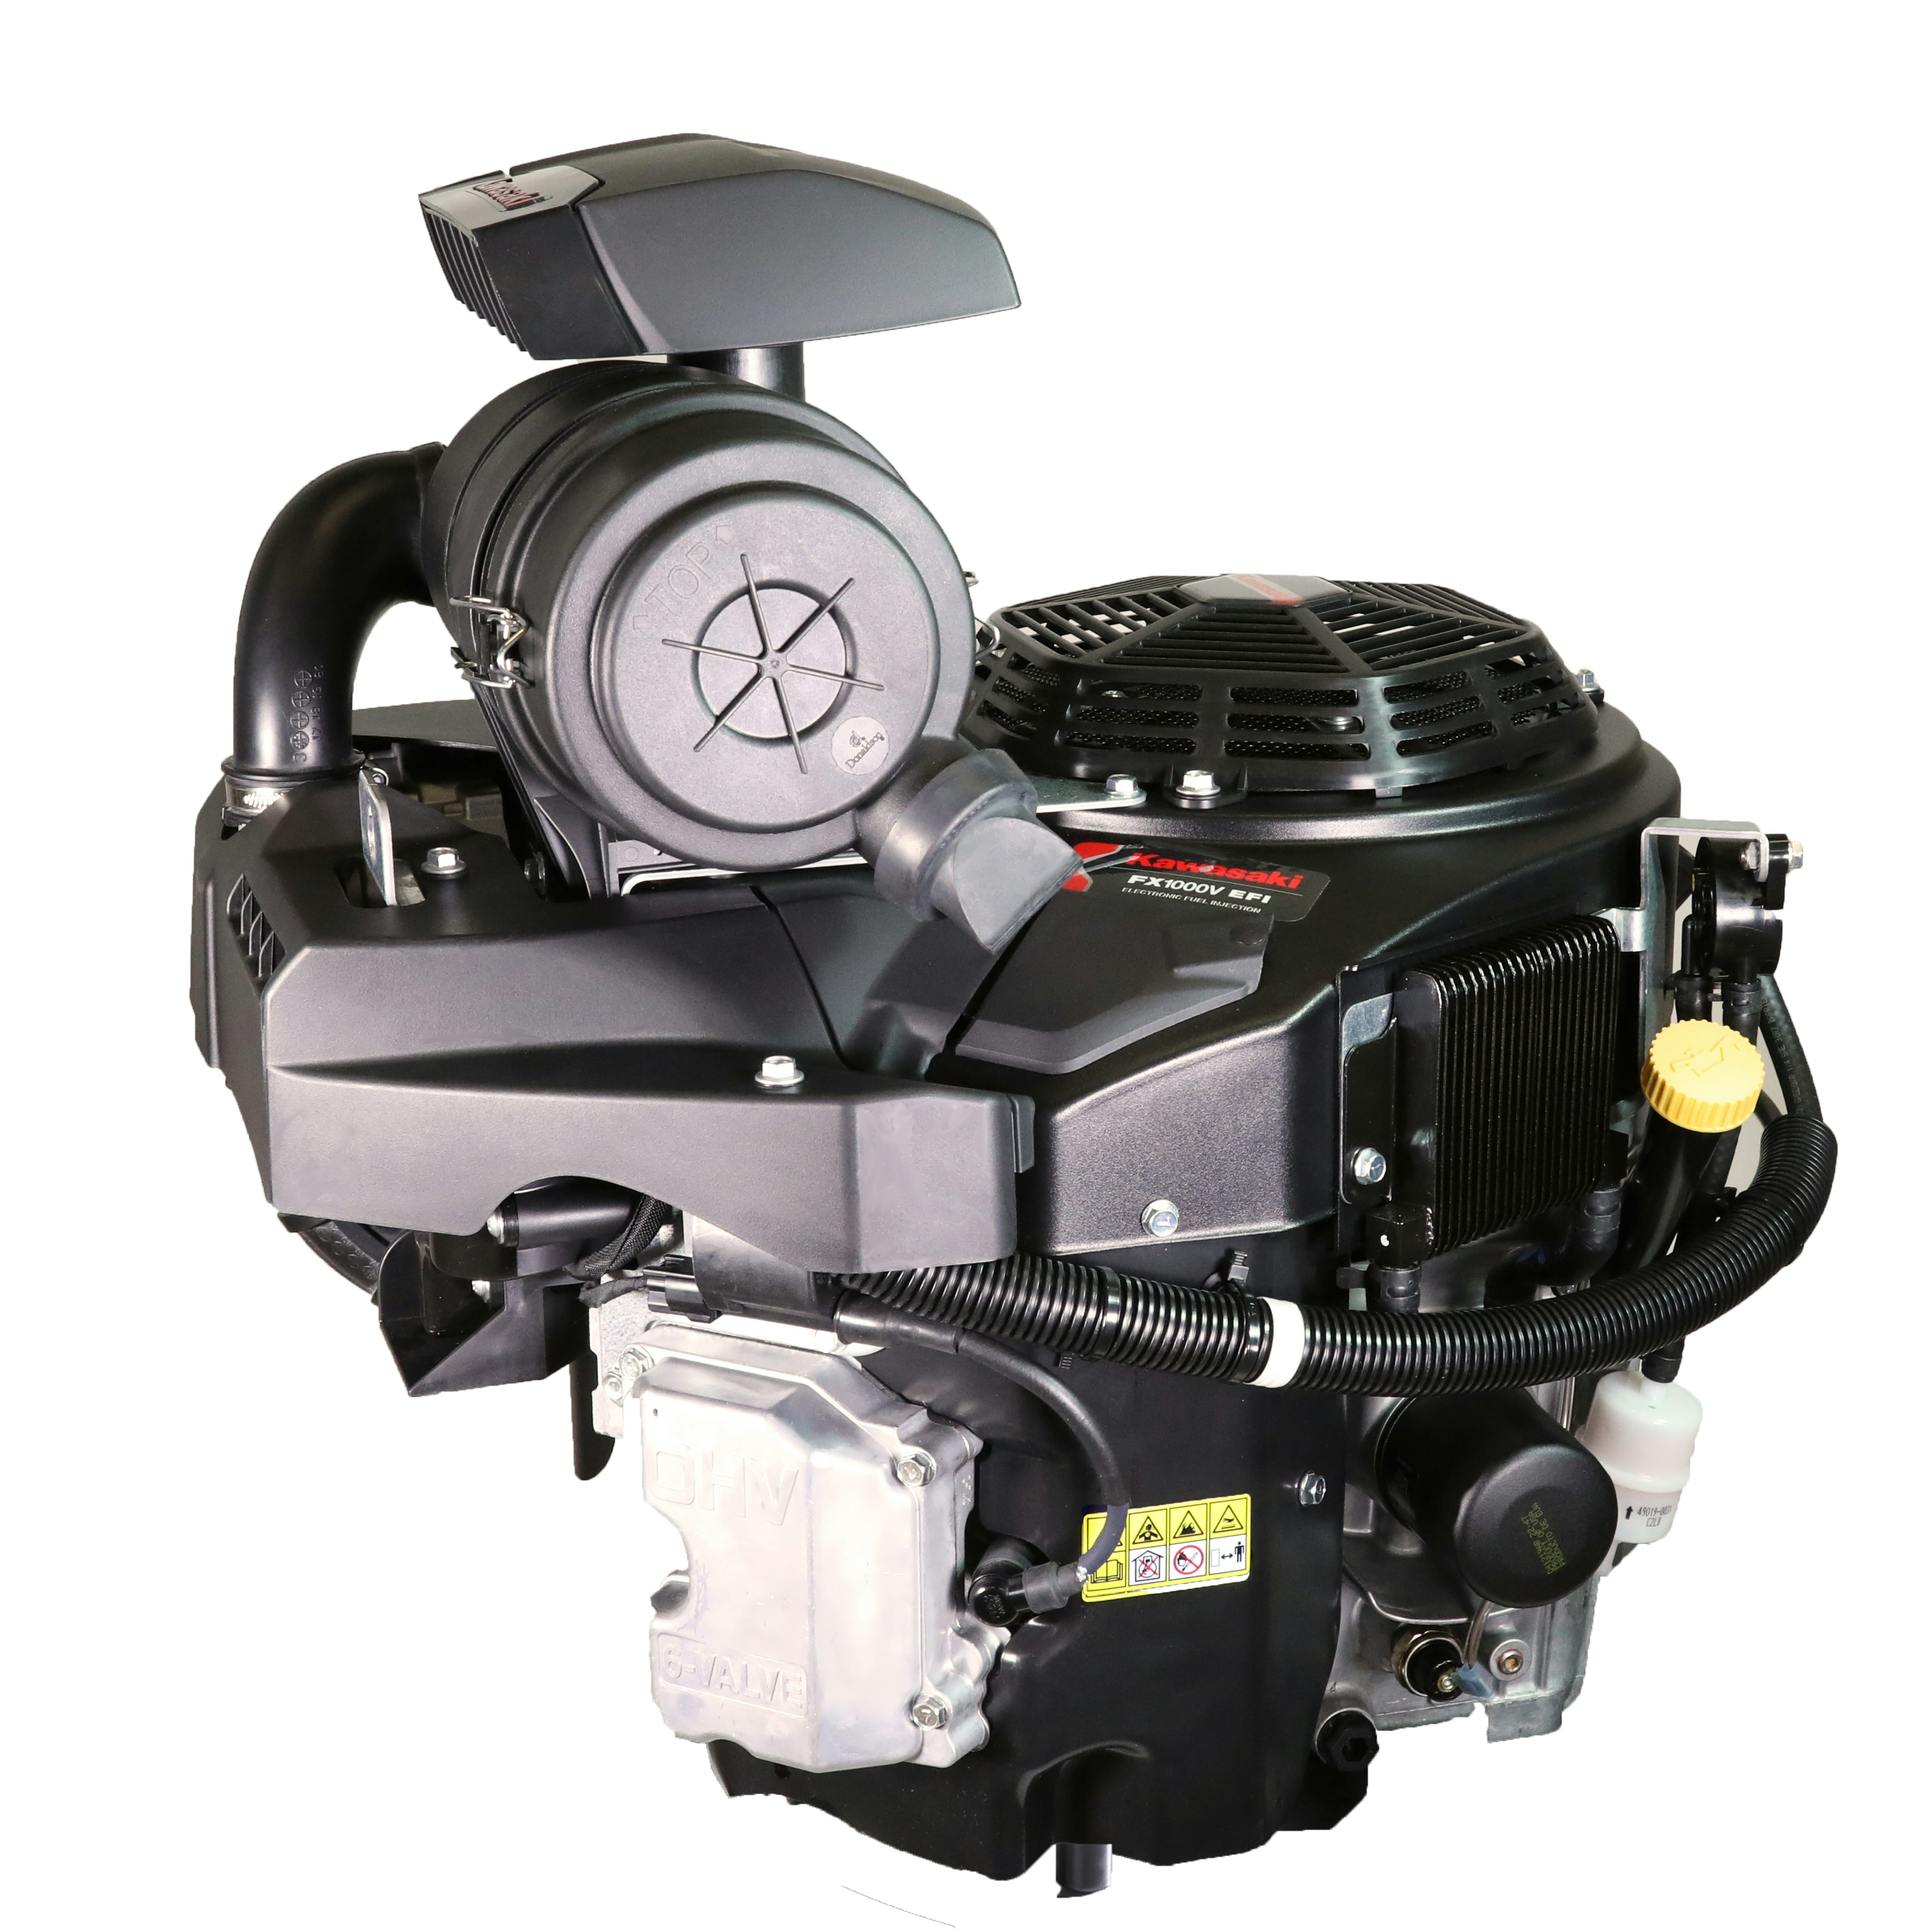 Kawasaki FX1000V EFI Engine From: Kawasaki Products (Kawasaki Motors Corp., U.S.A.) OEM Off-Highway